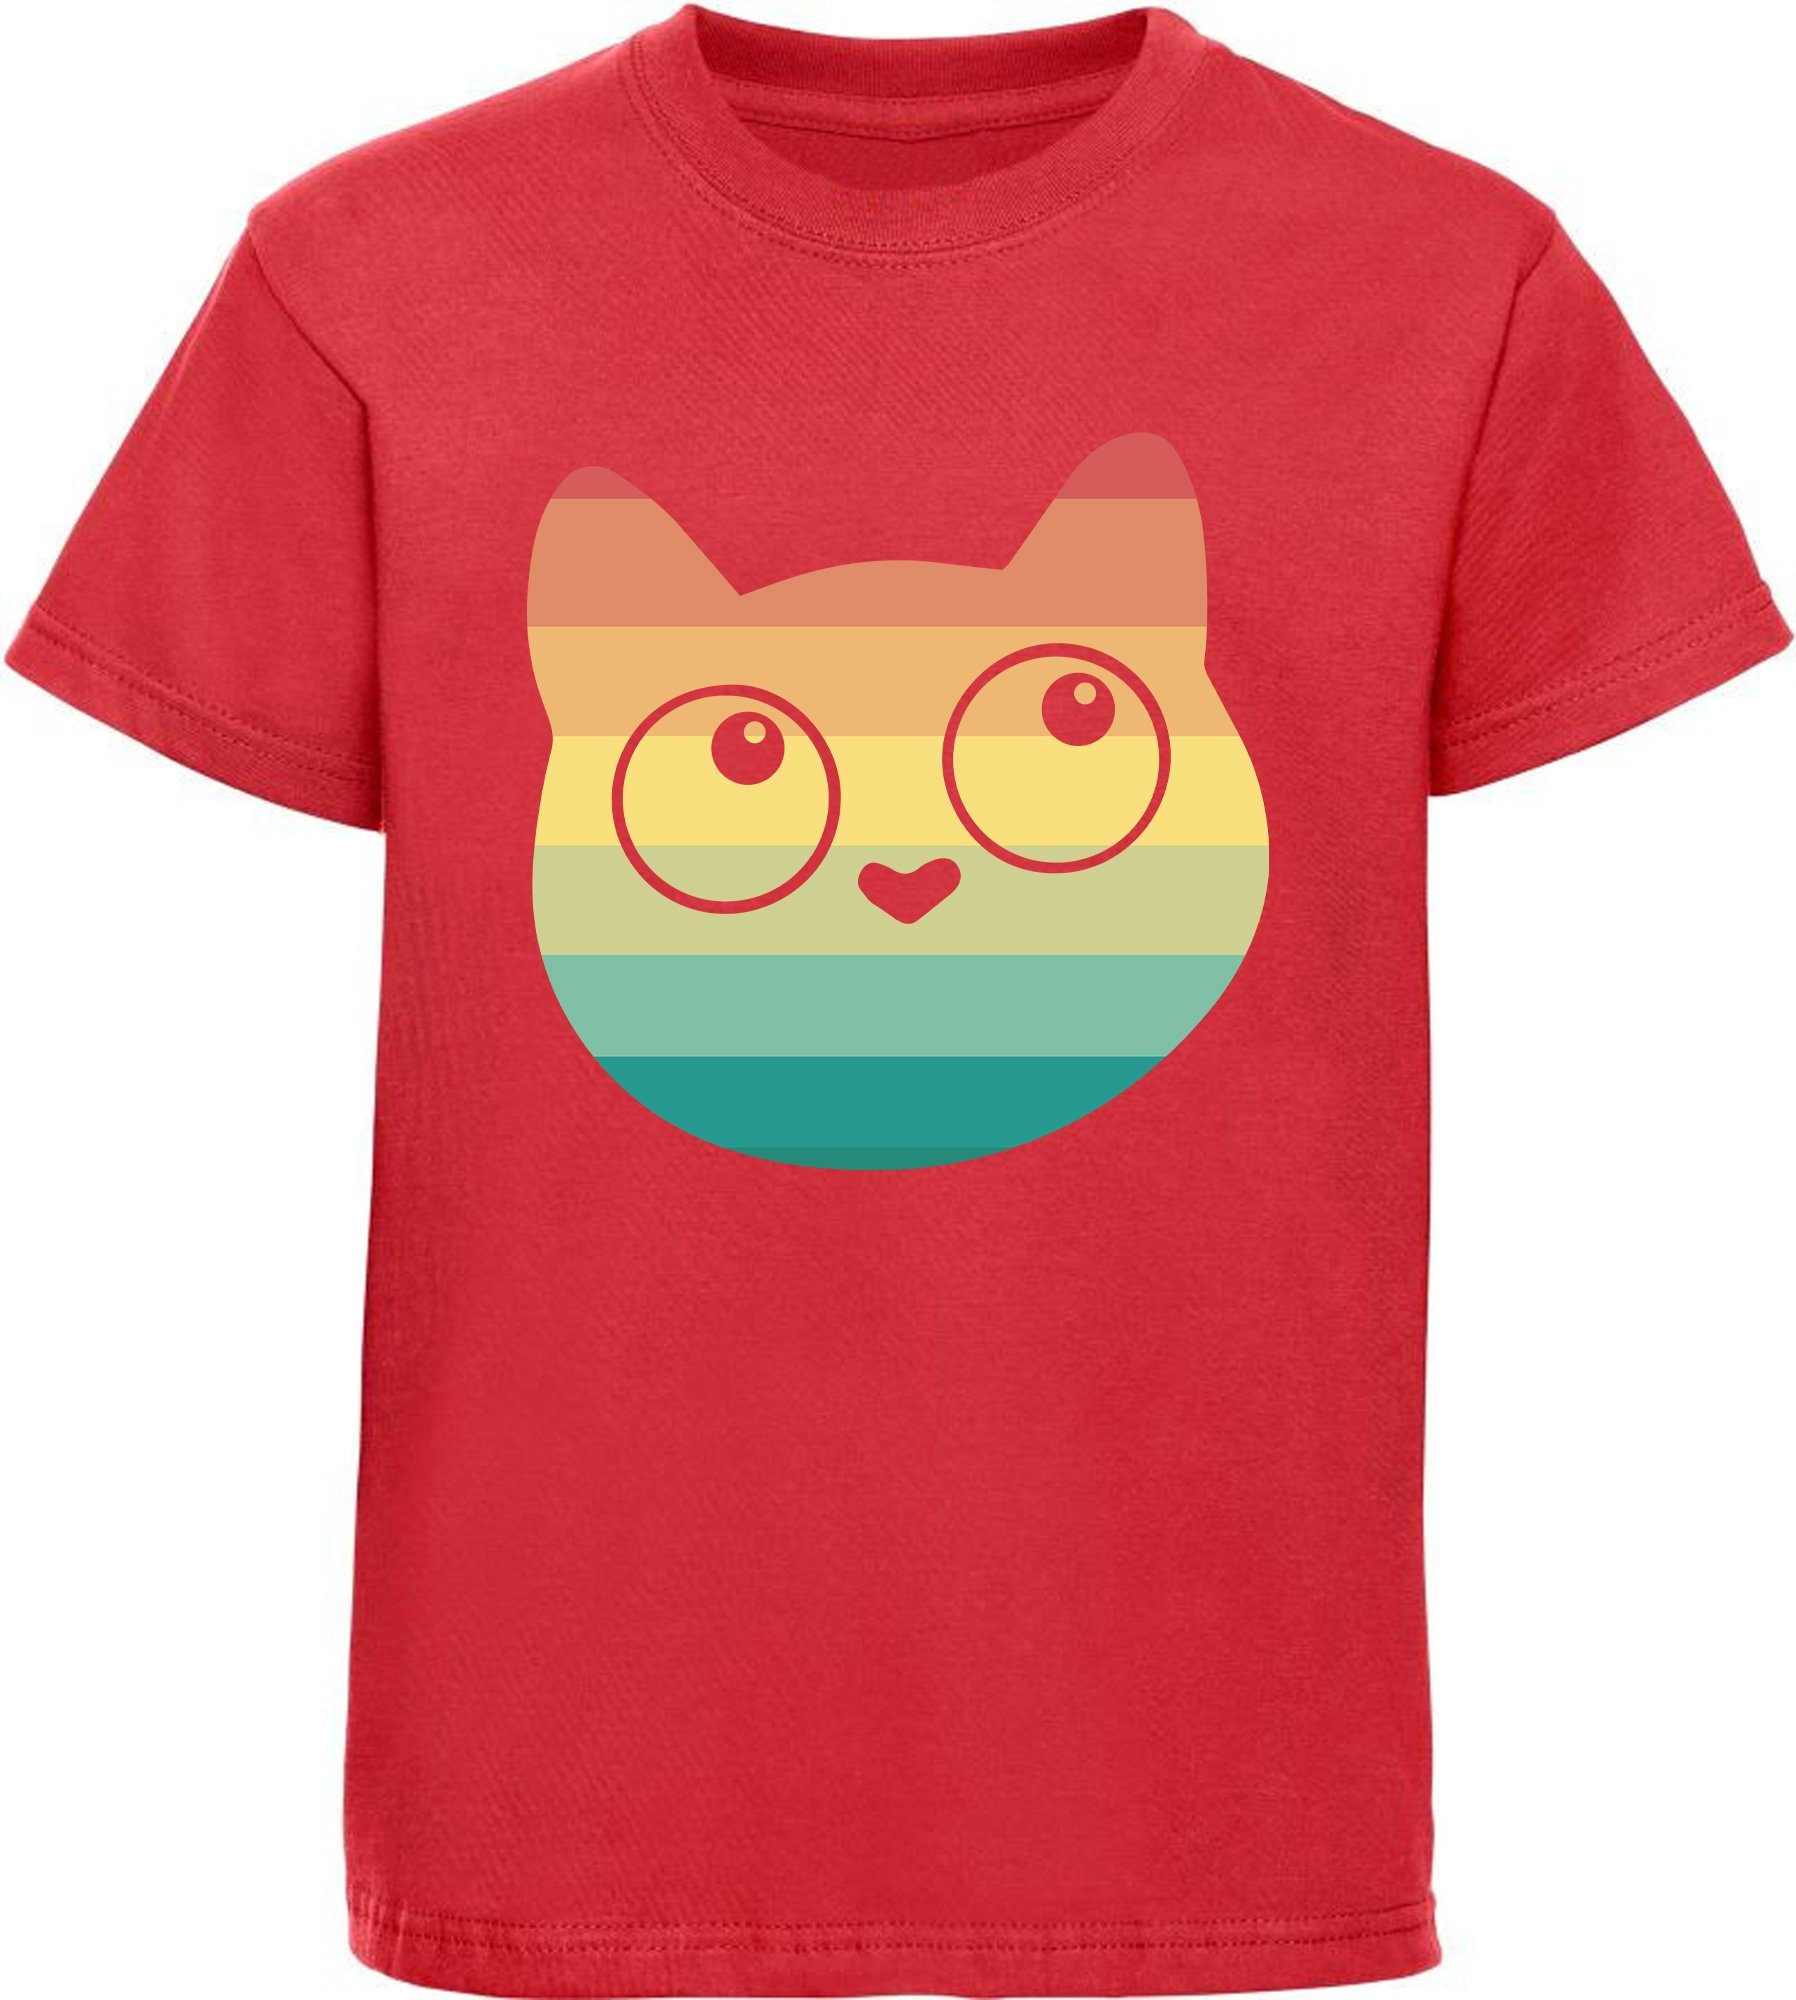 Katze, Kitty Retro Mädchen rot, MyDesign24 schwarz, Aufdruck rosa, i128 weiß, Baumwollshirt mit Print-Shirt bedrucktes T-Shirt mit